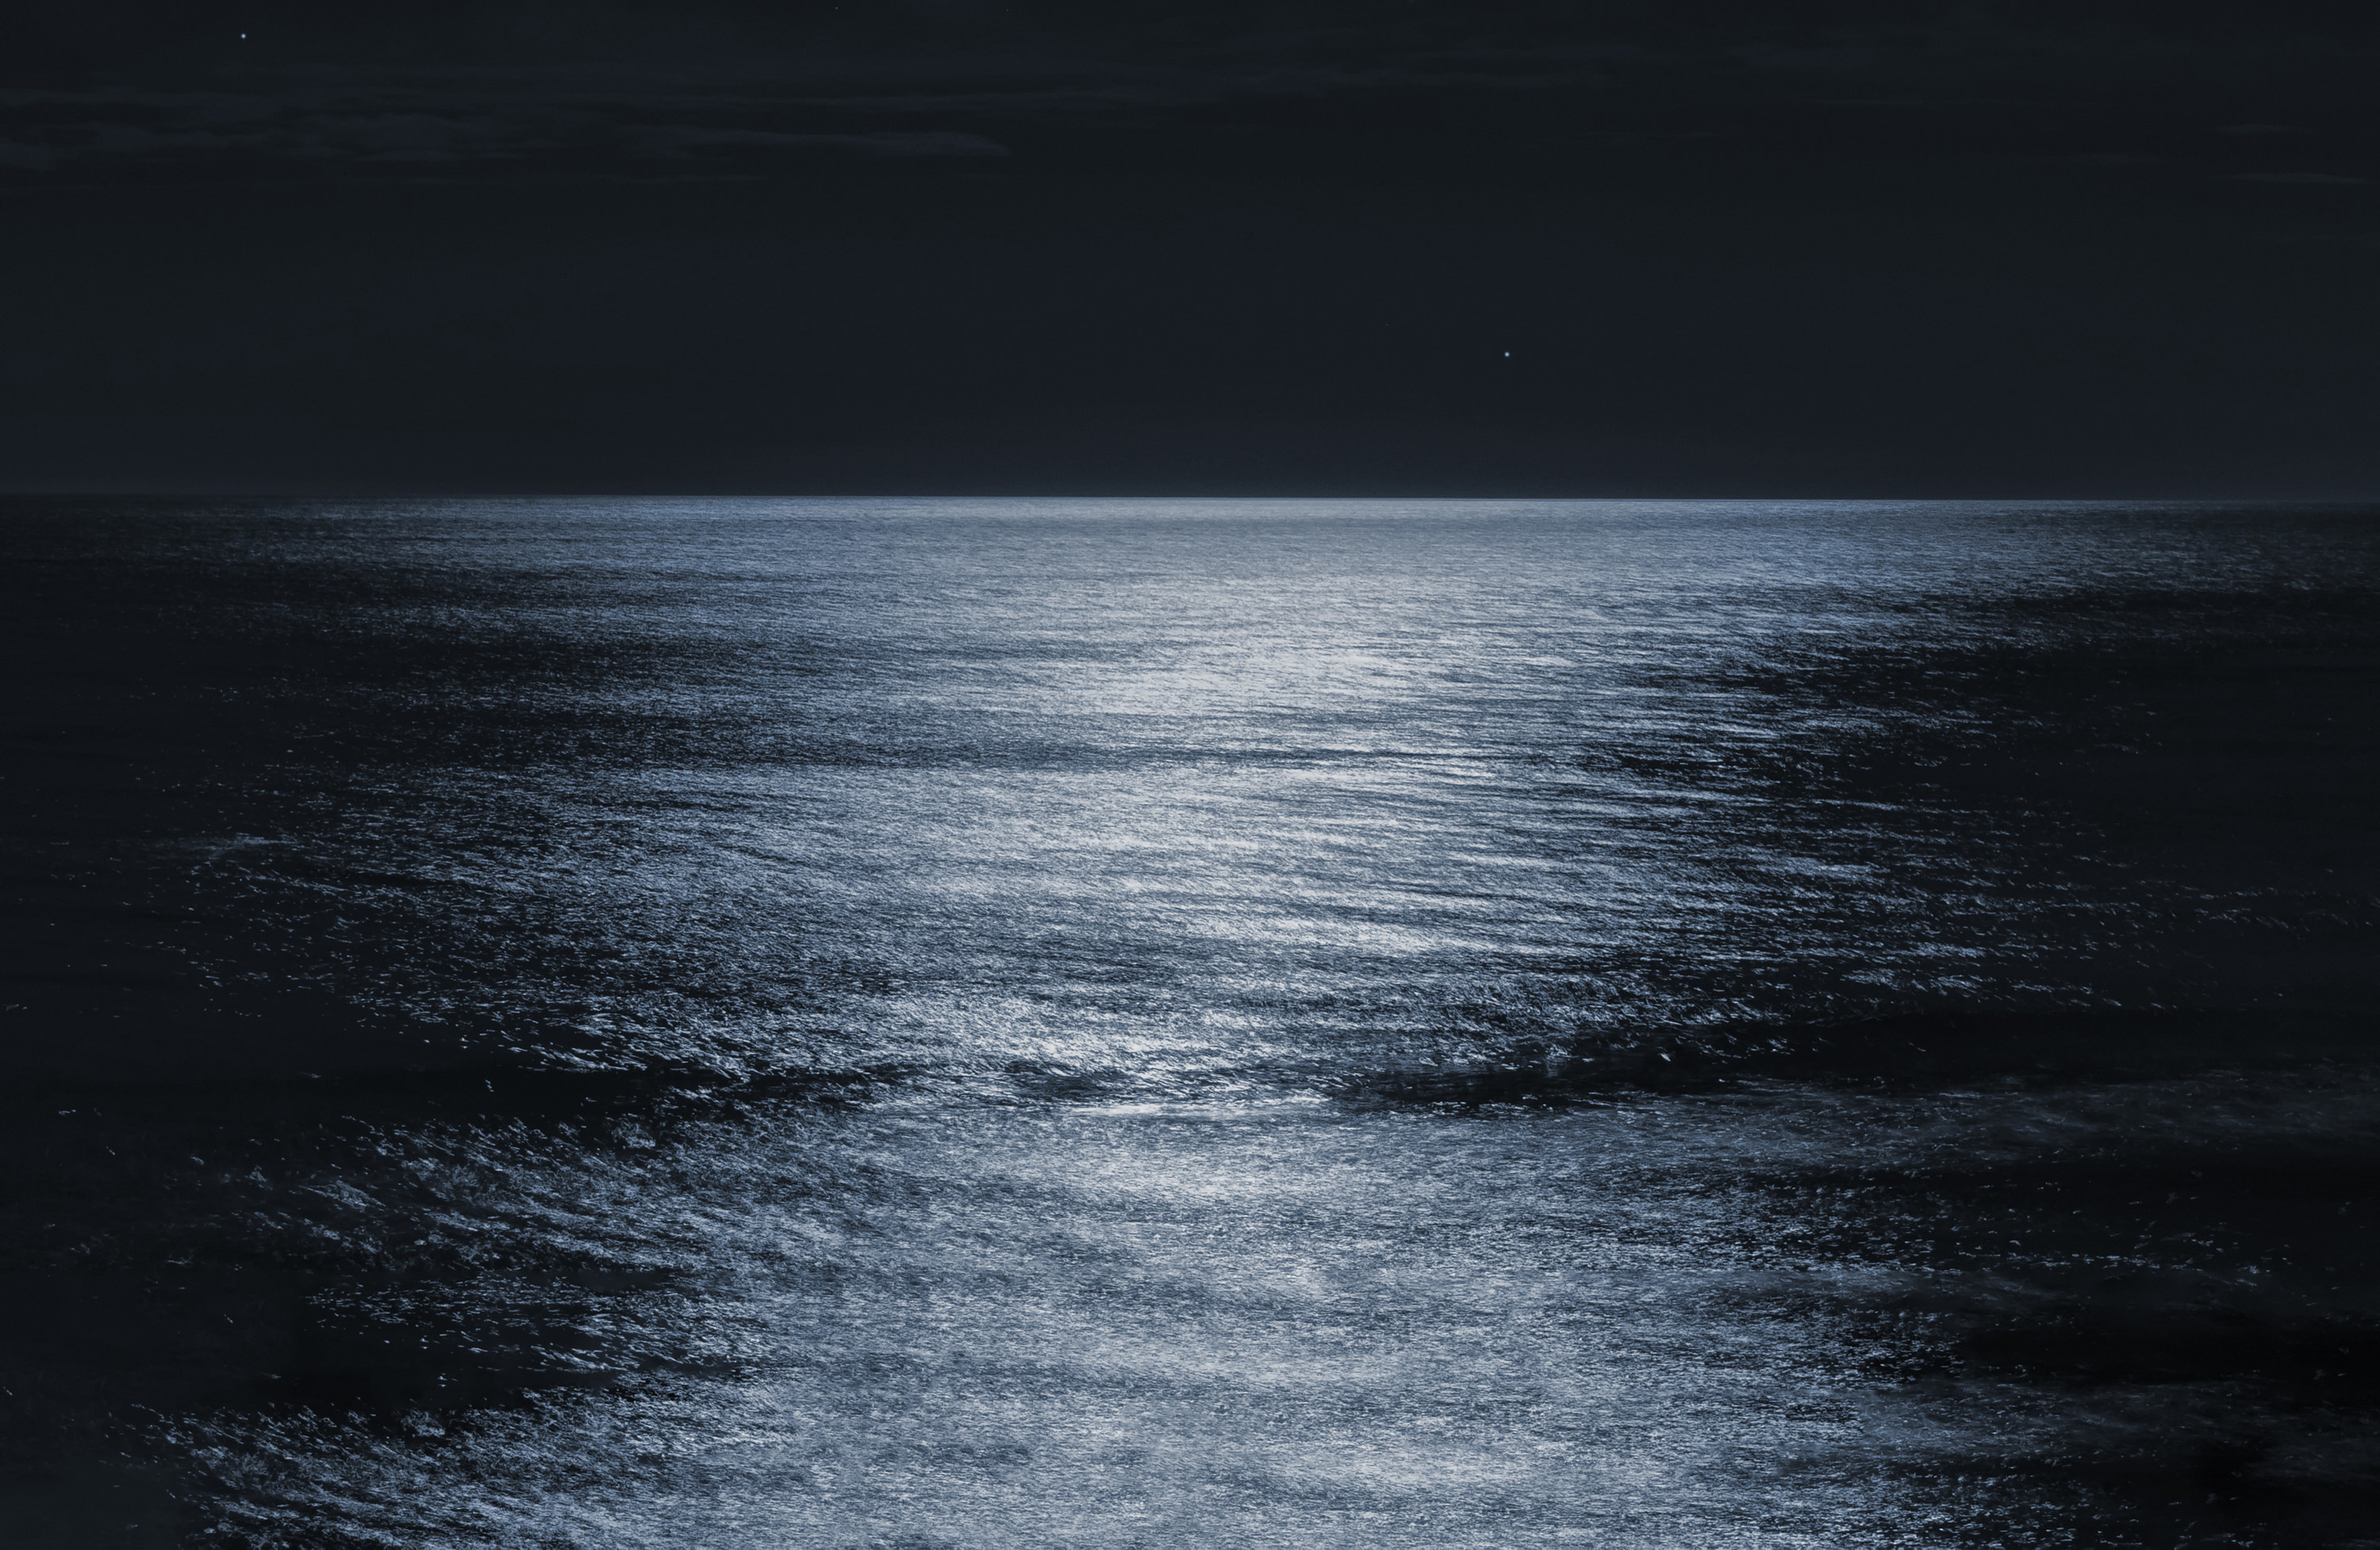 the still ocean water at night